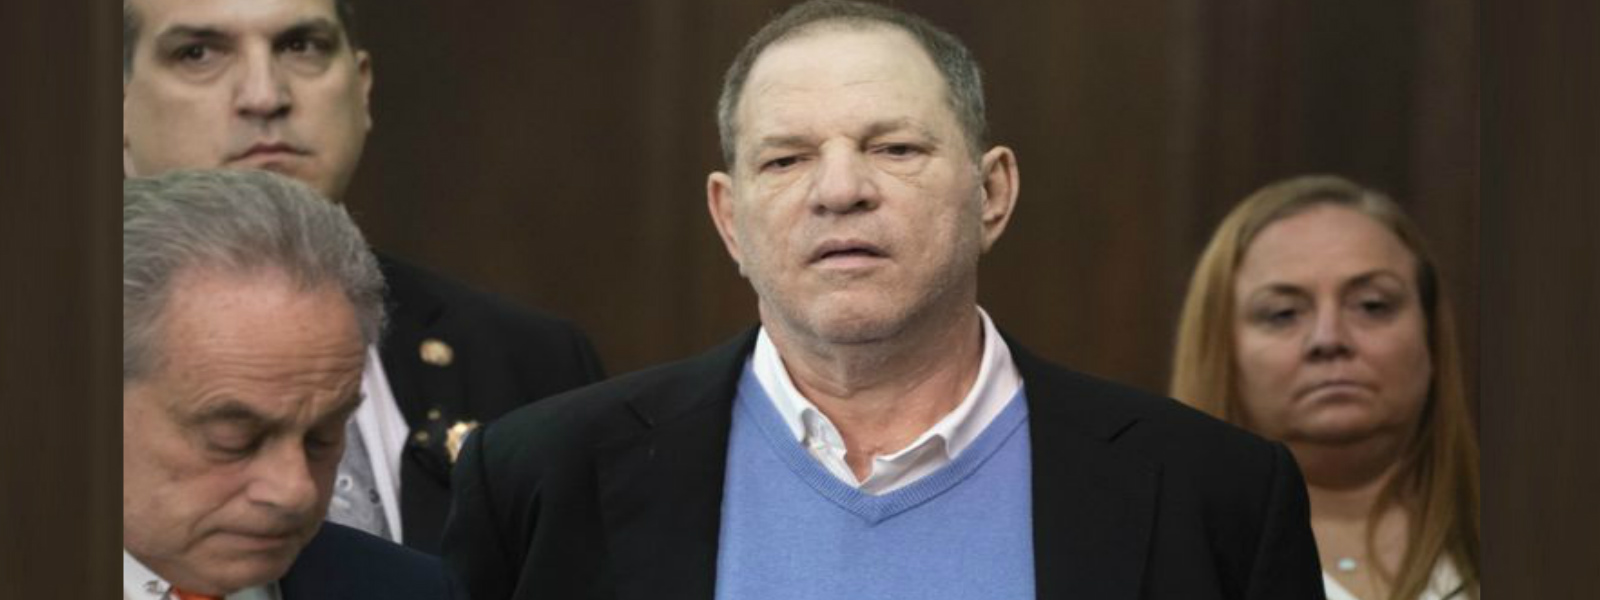 Harvey Weinstein released on $1m bail